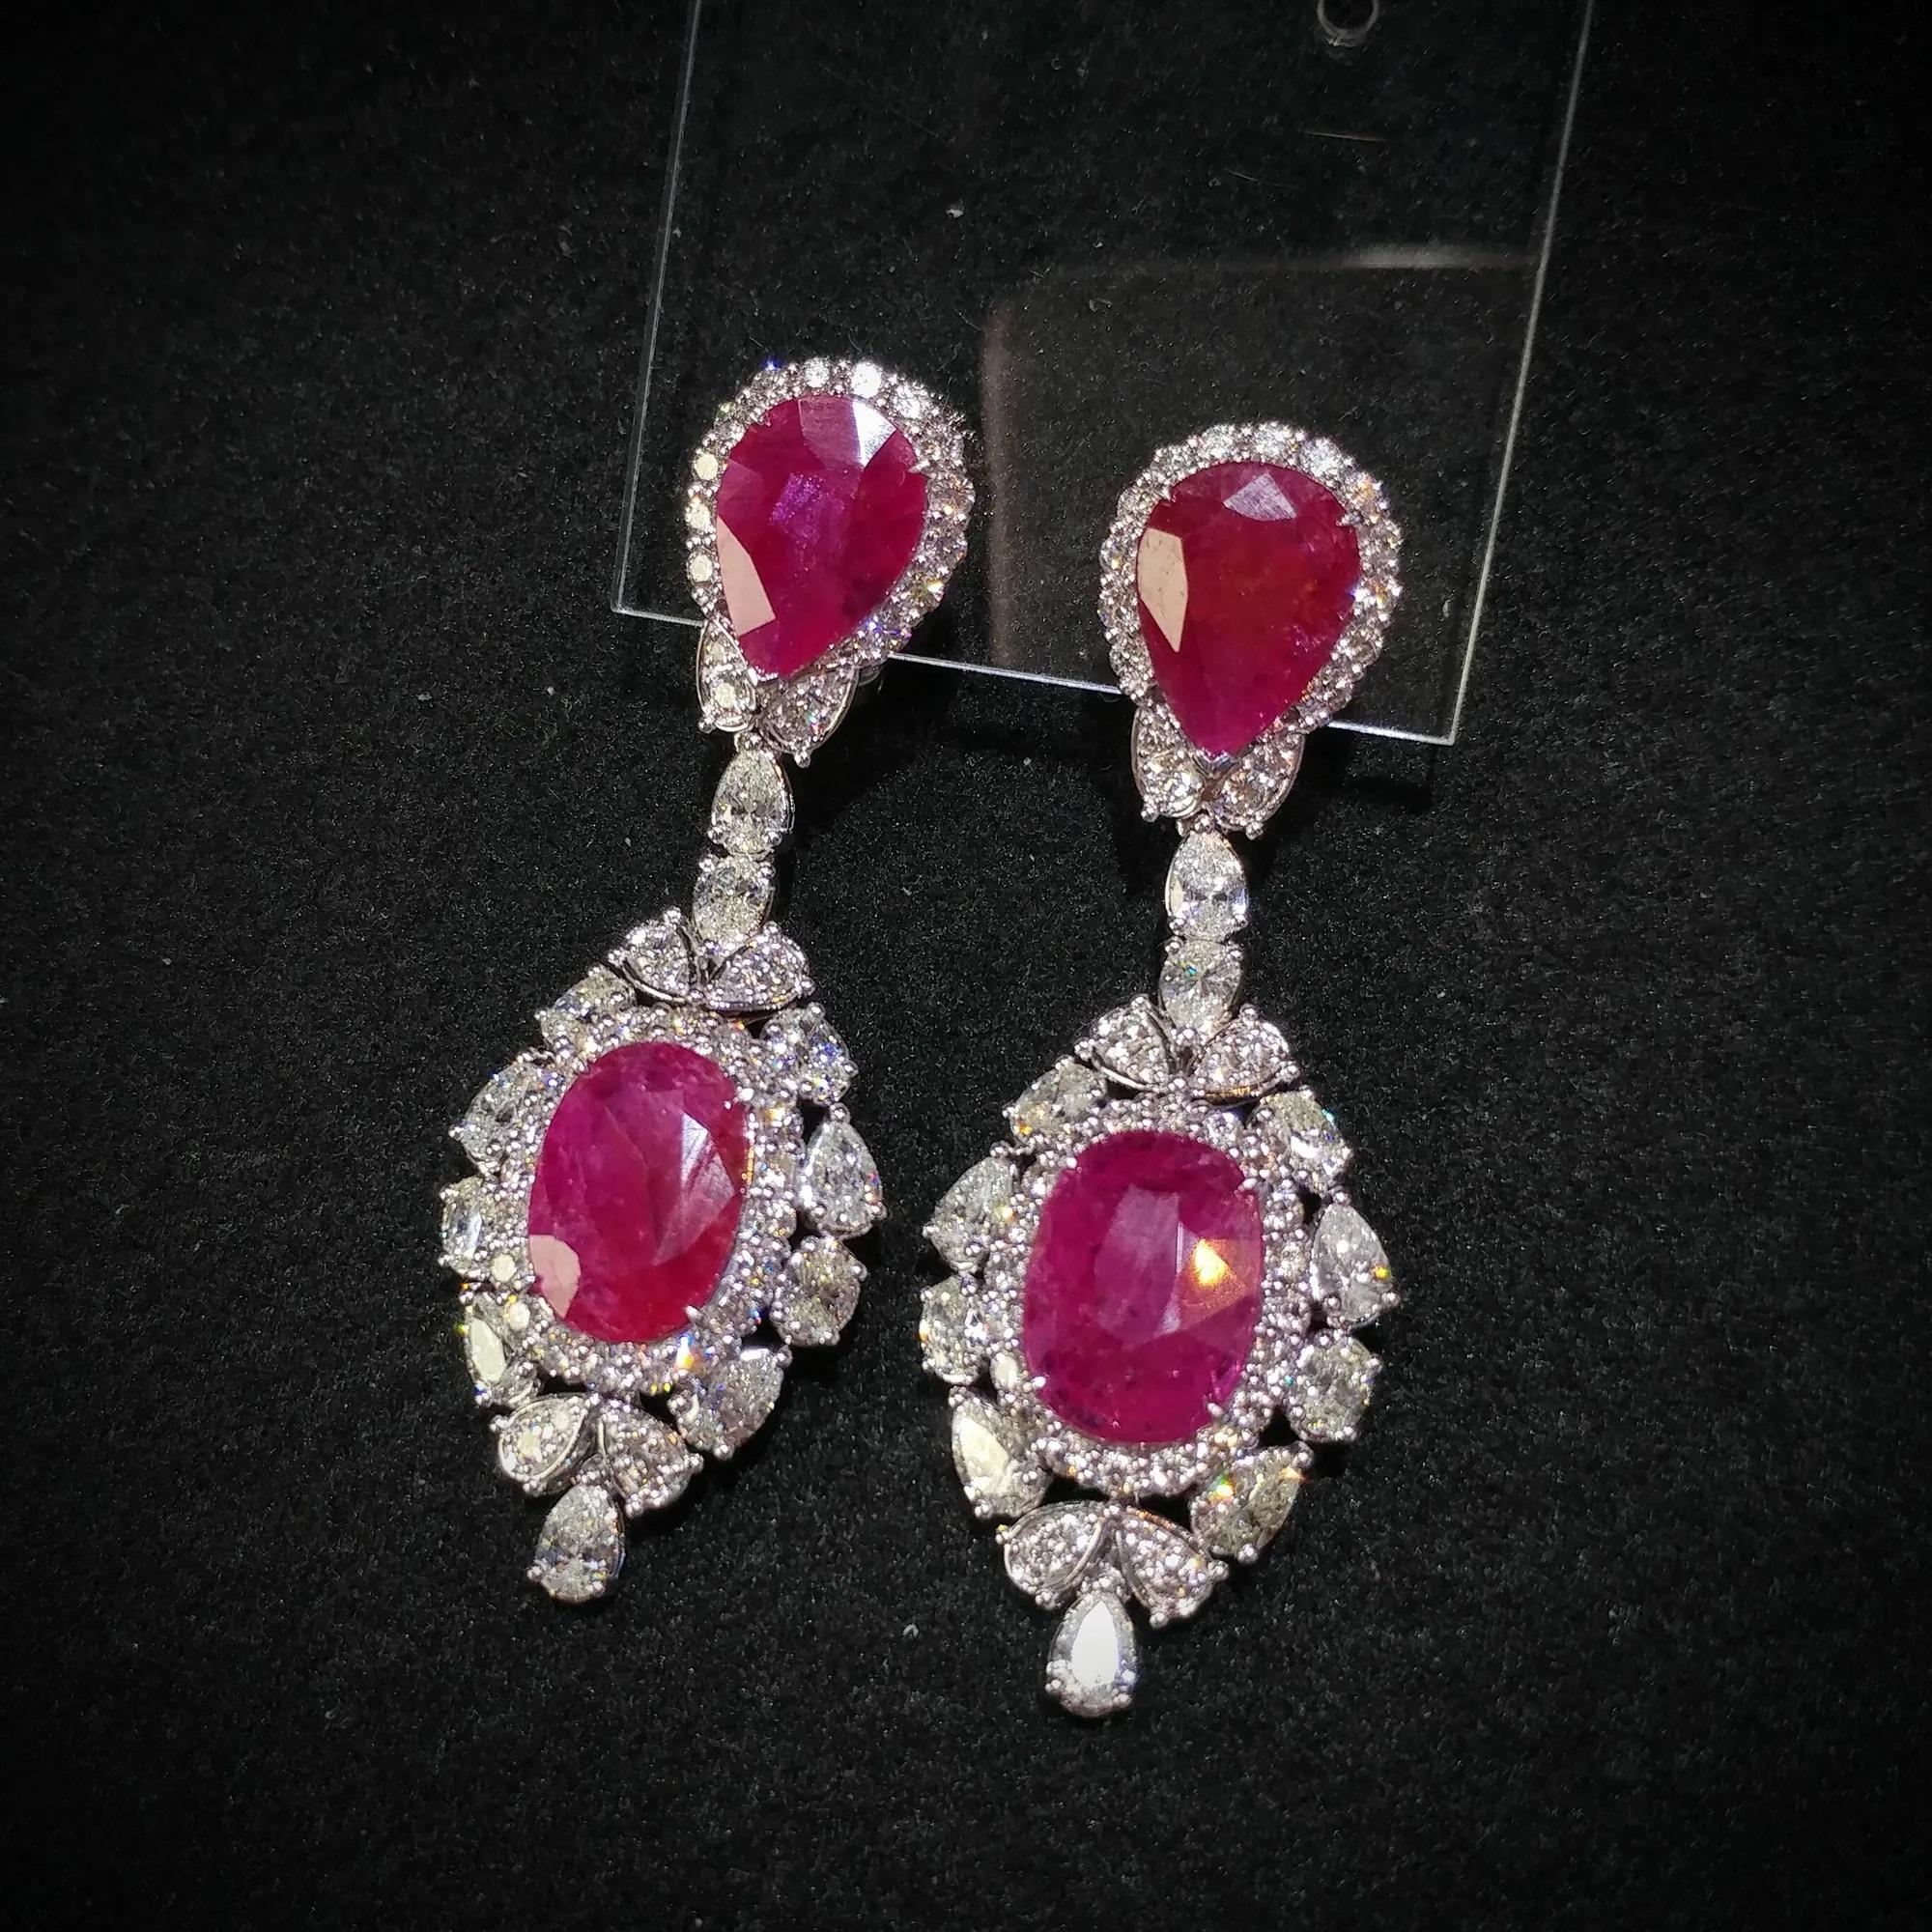 Oval Cut IGI Certified 16.74 Carat Ruby & 6.86 Carat Diamond Earrings in 18K White Gold For Sale